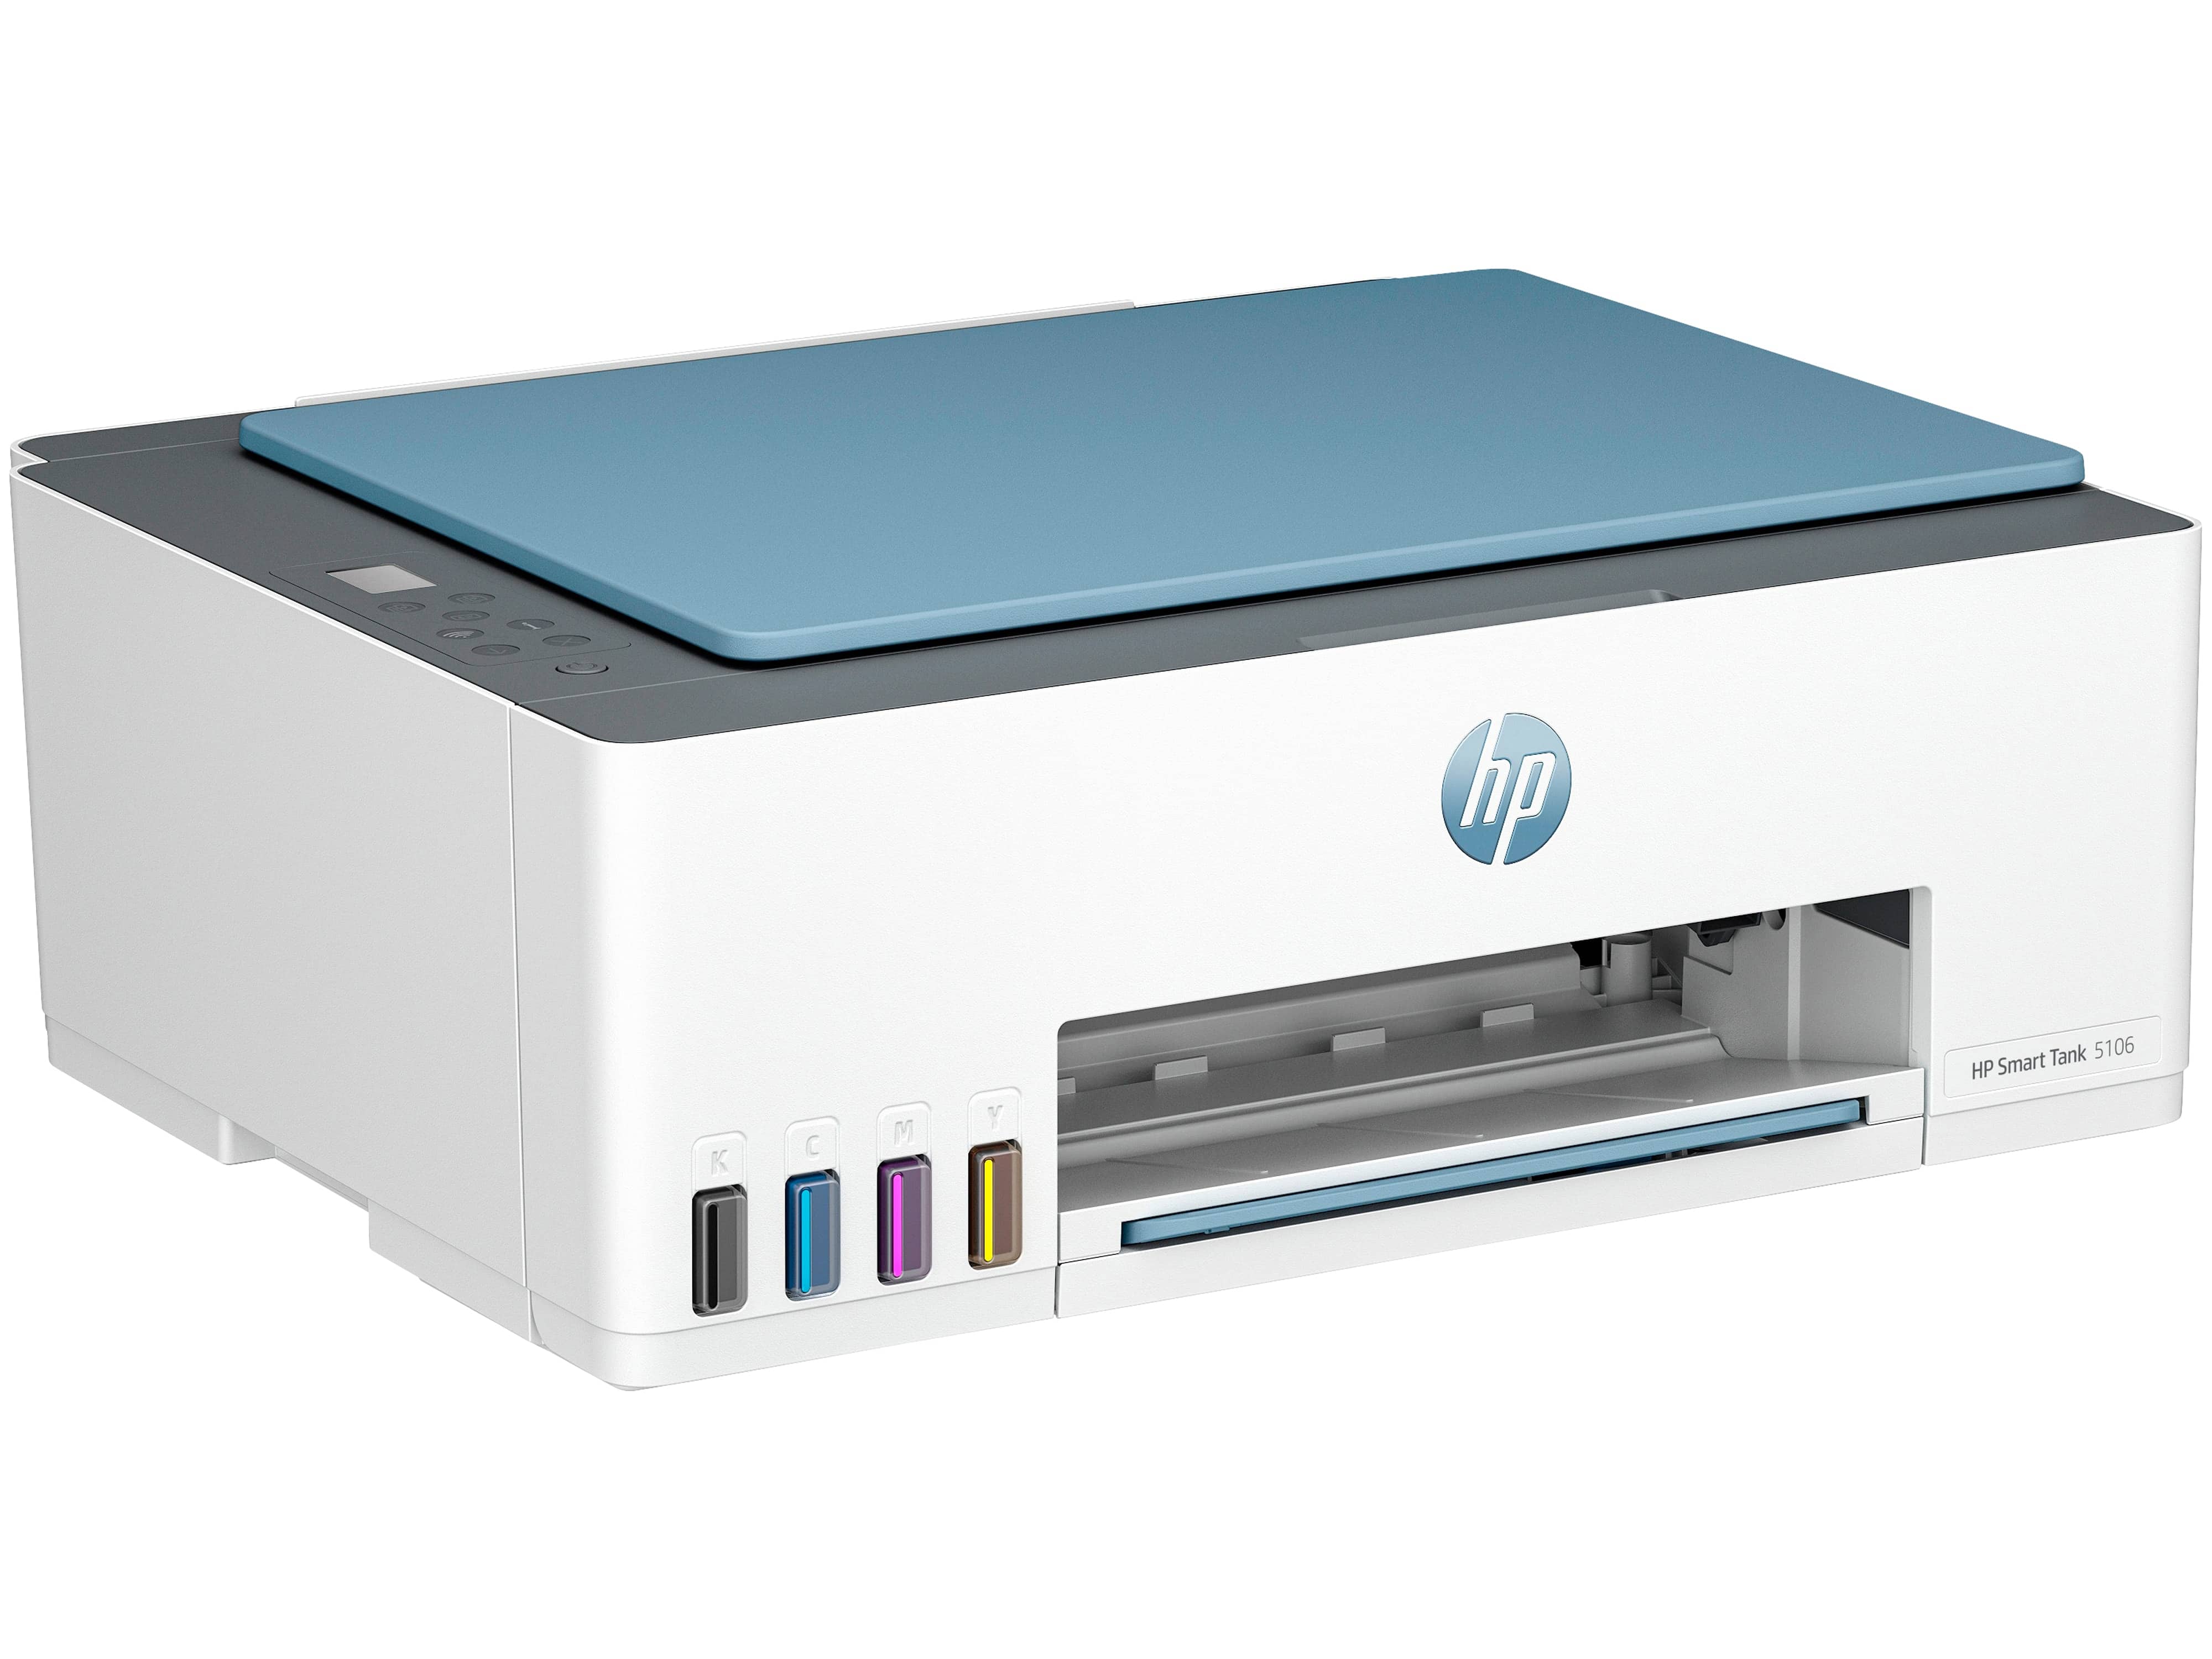 HP Drucker SmartTank 5106